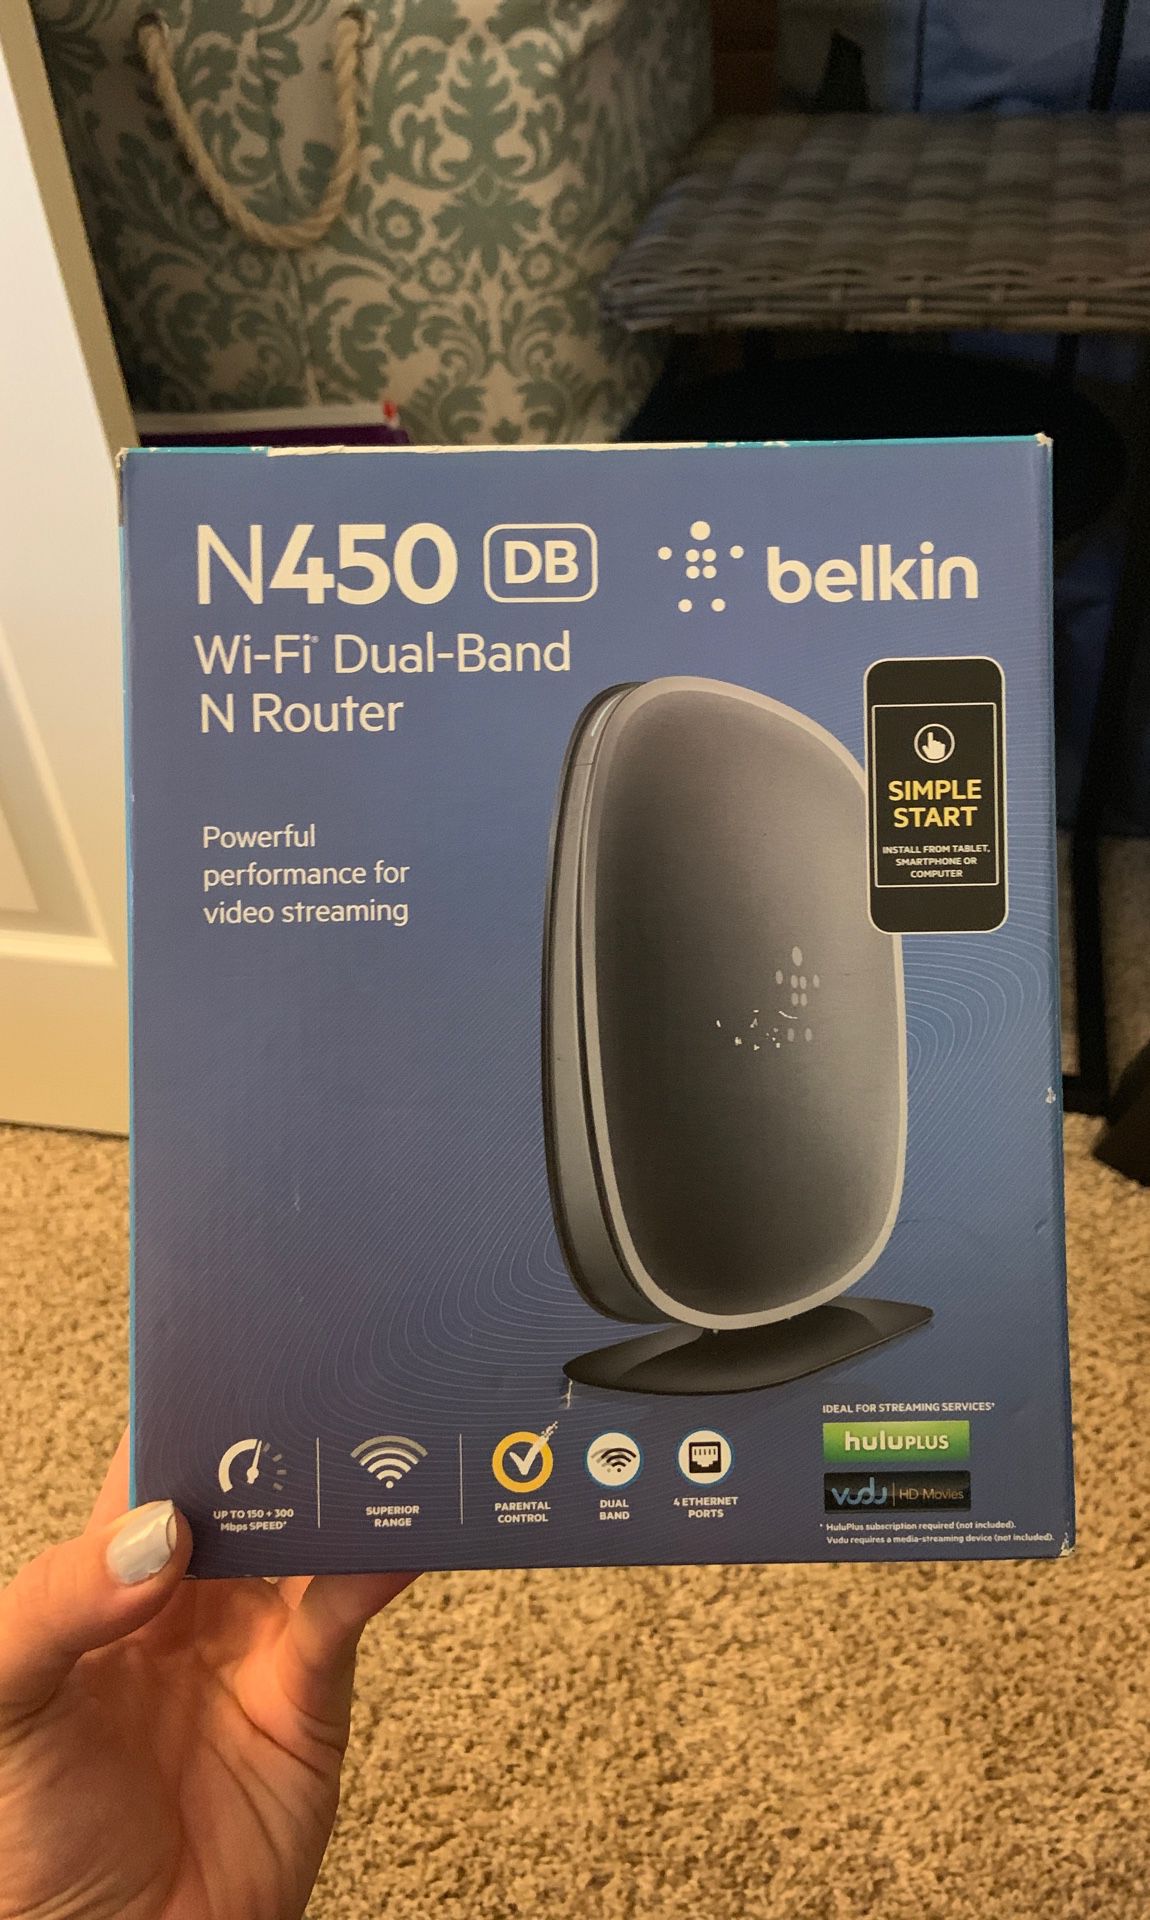 Belkin N450 Wi-Fi Dual-Band N Router